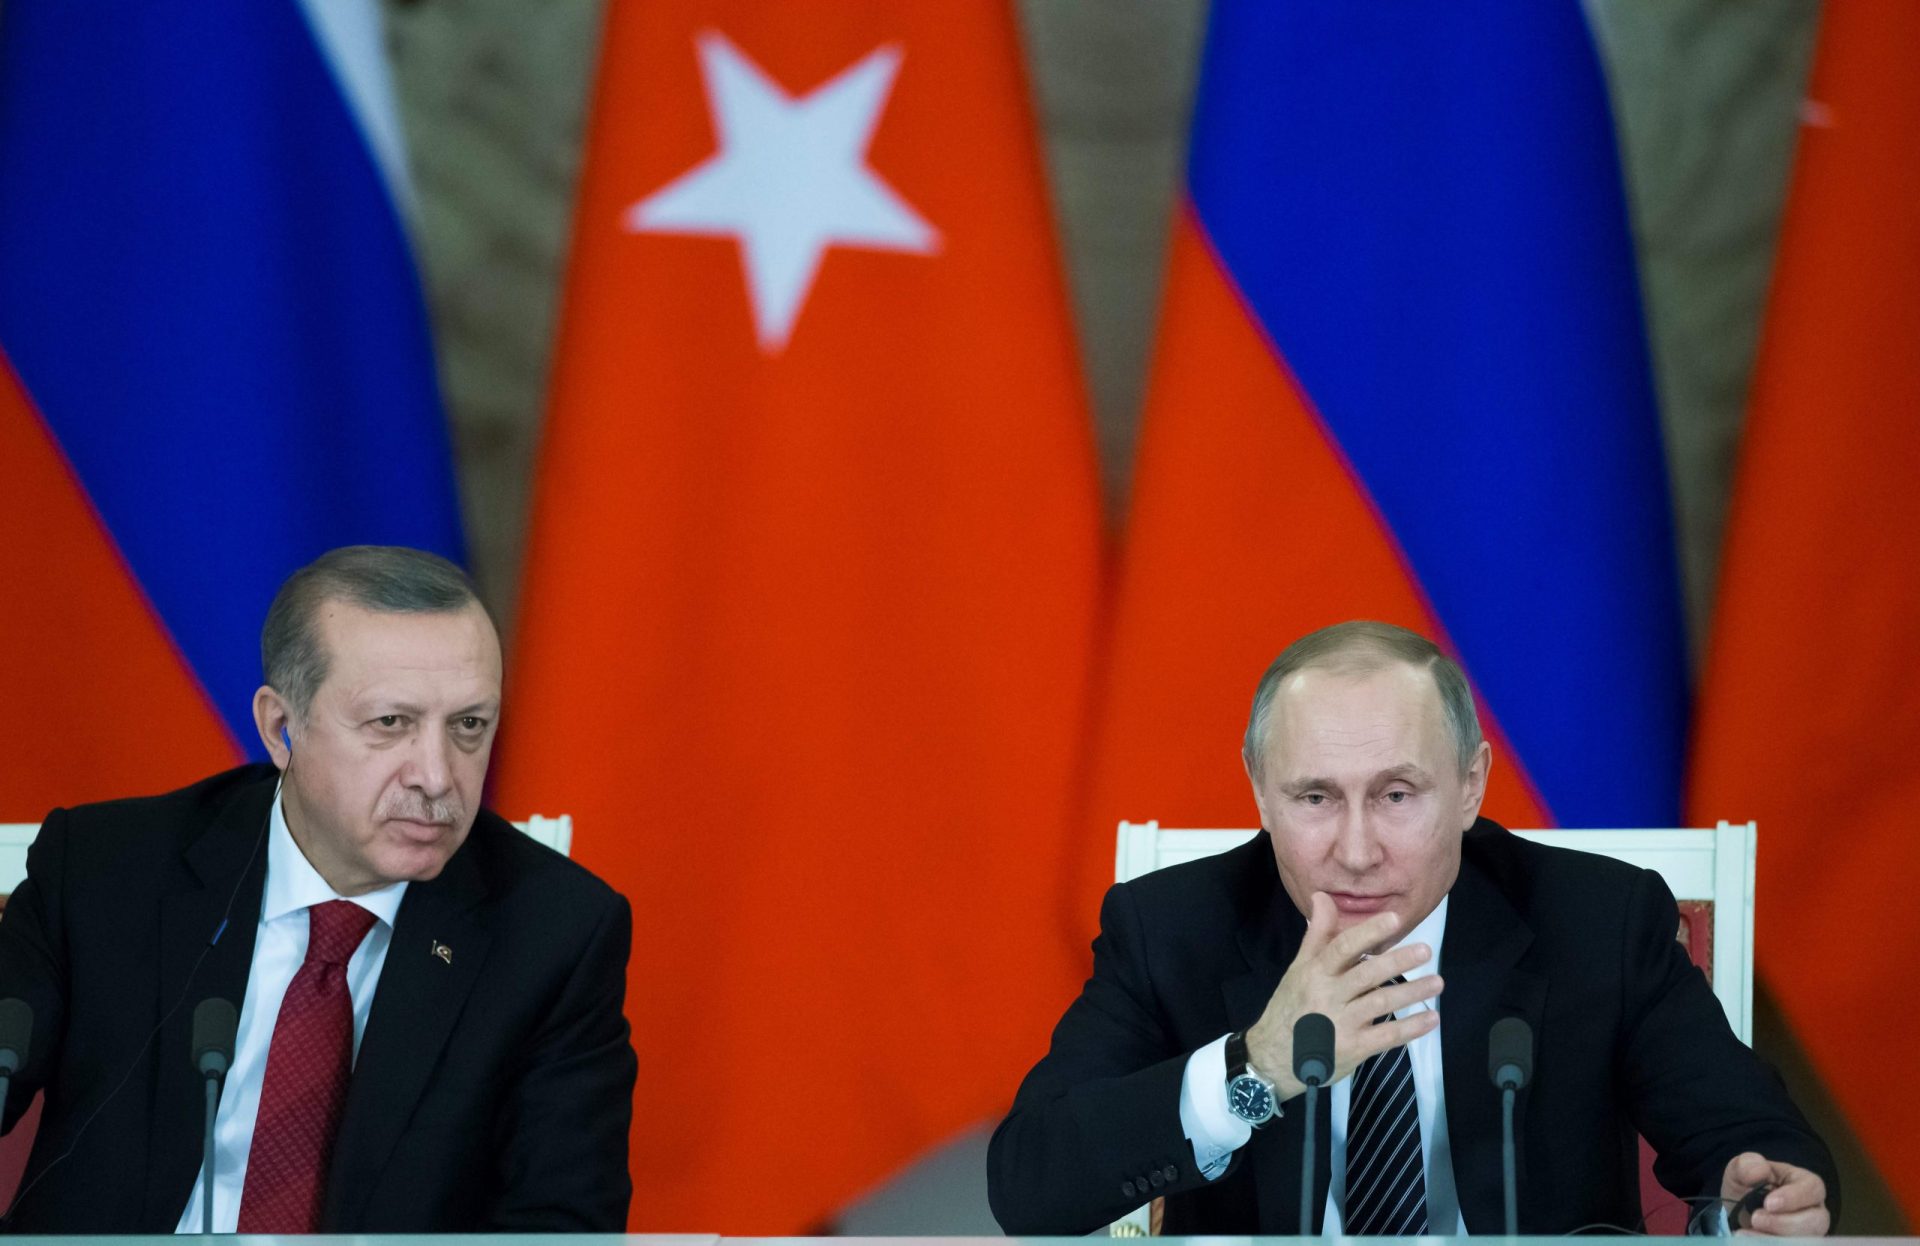 Síria. Putin está “cautelosamente otimista” sobre o fim da guerra